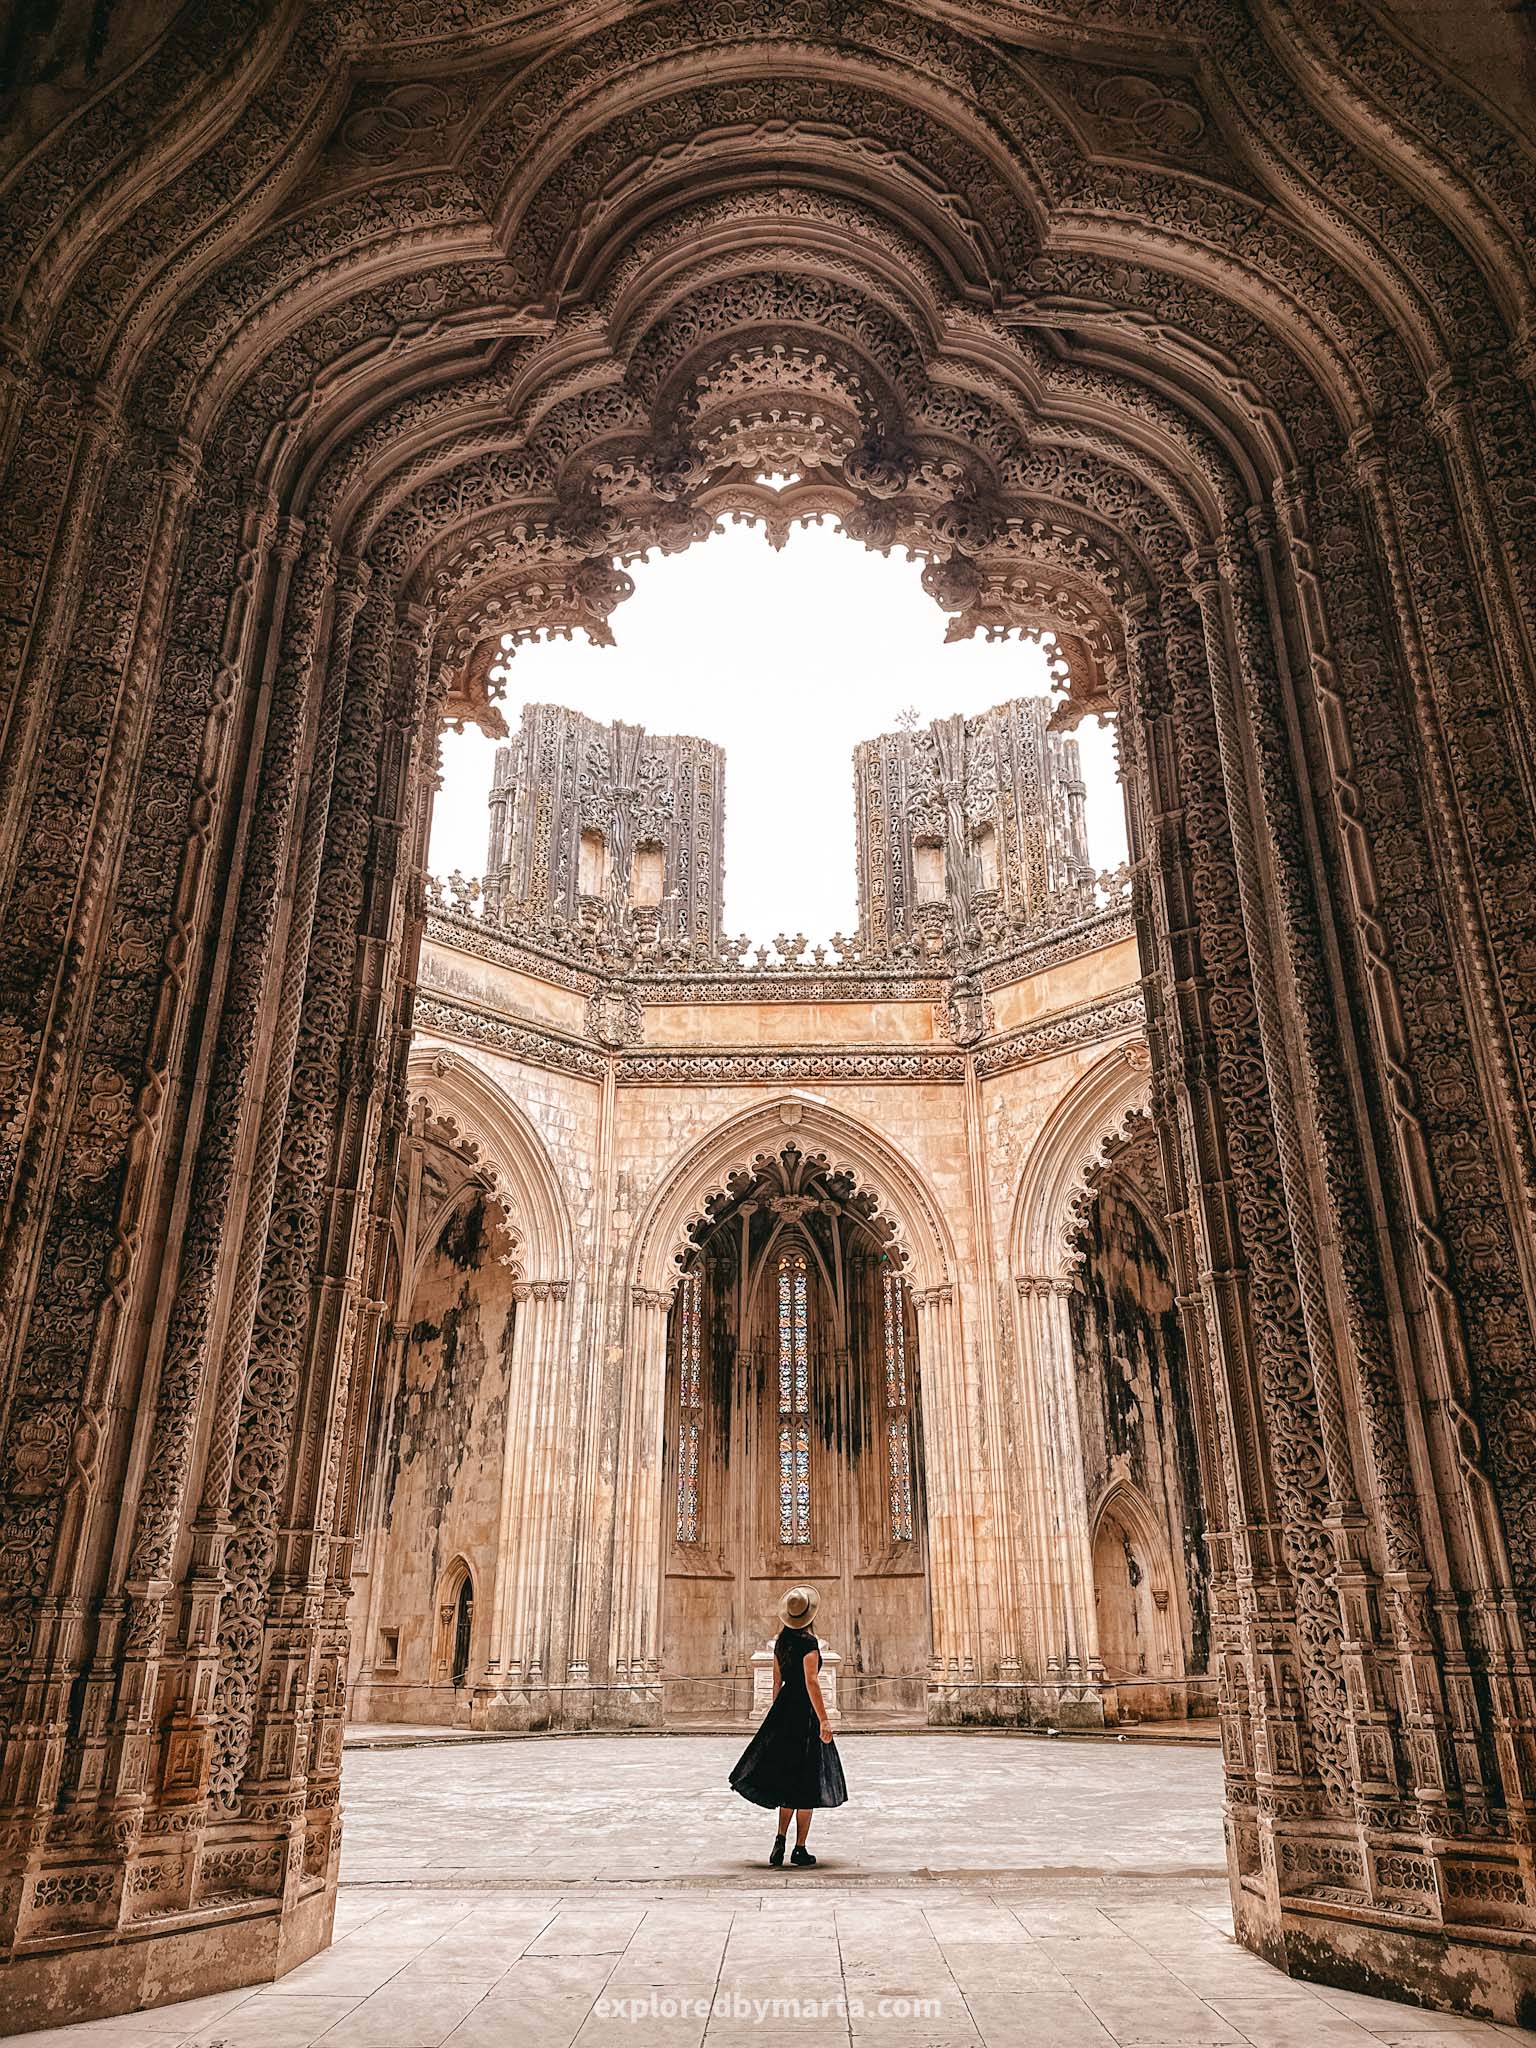 Portugal bucket list-Batalha Monastery